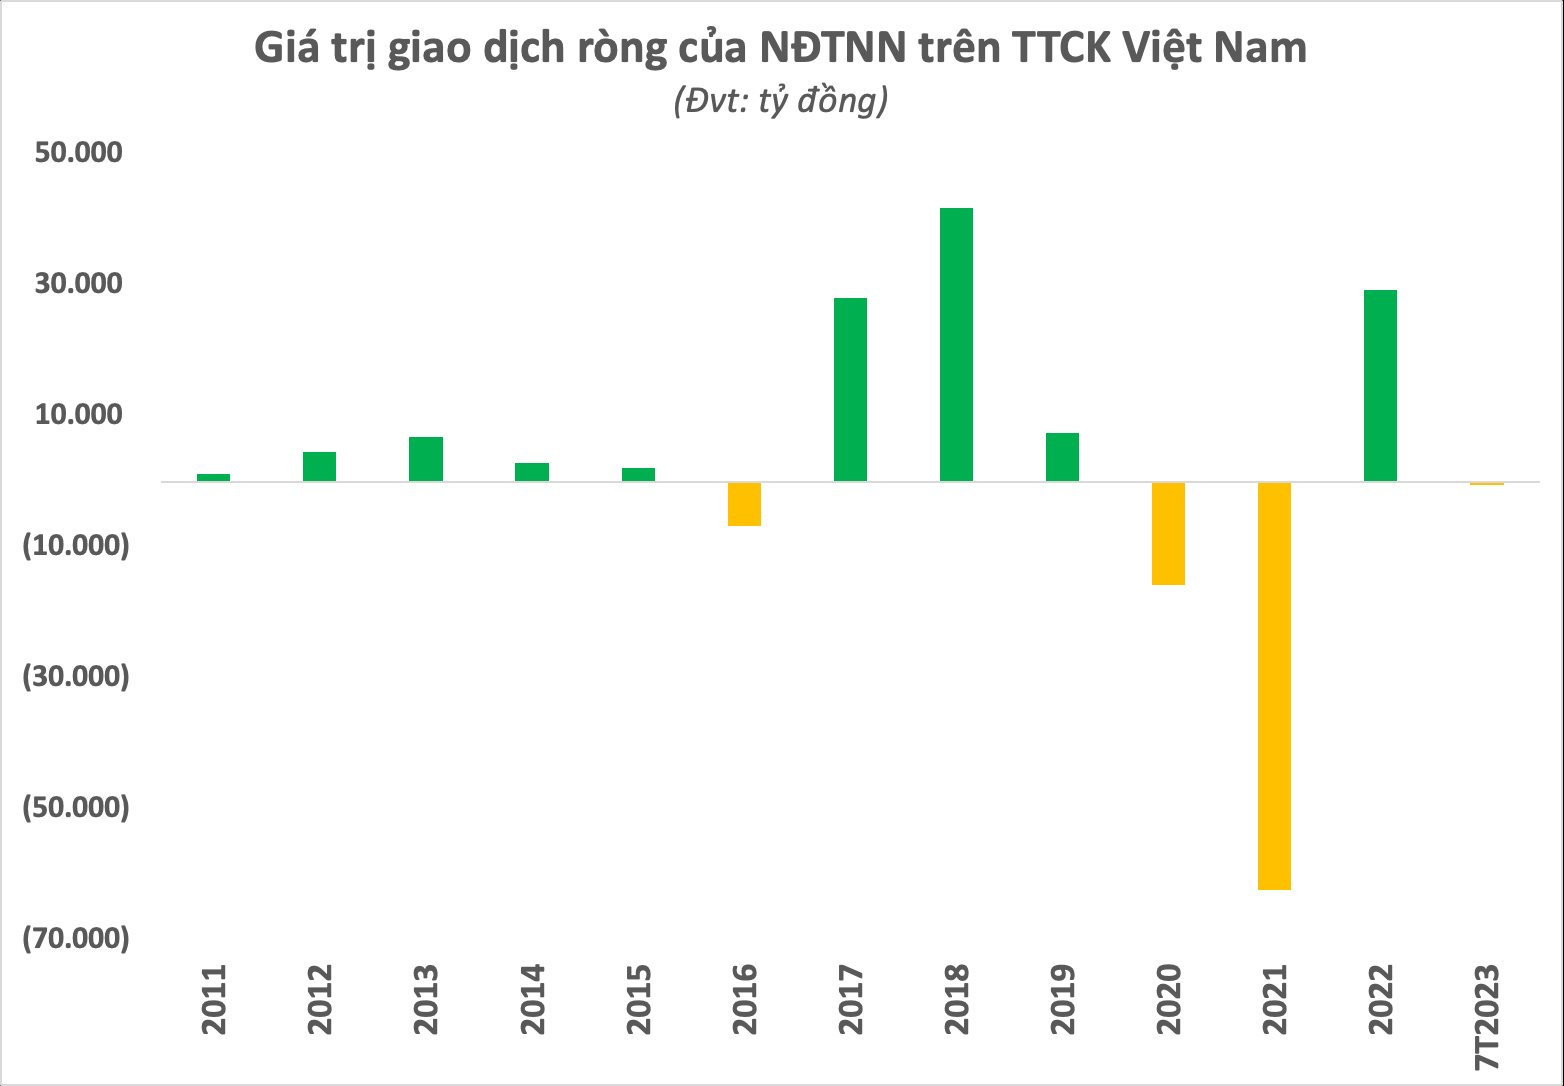 Sau 23 năm hoạt động của thị trường chứng khoán Việt Nam: Phổ cập hơn 7 triệu tài khoản, khẳng định vị thế của kênh dẫn vốn quan trọng trong nền kinh tế - Ảnh 8.